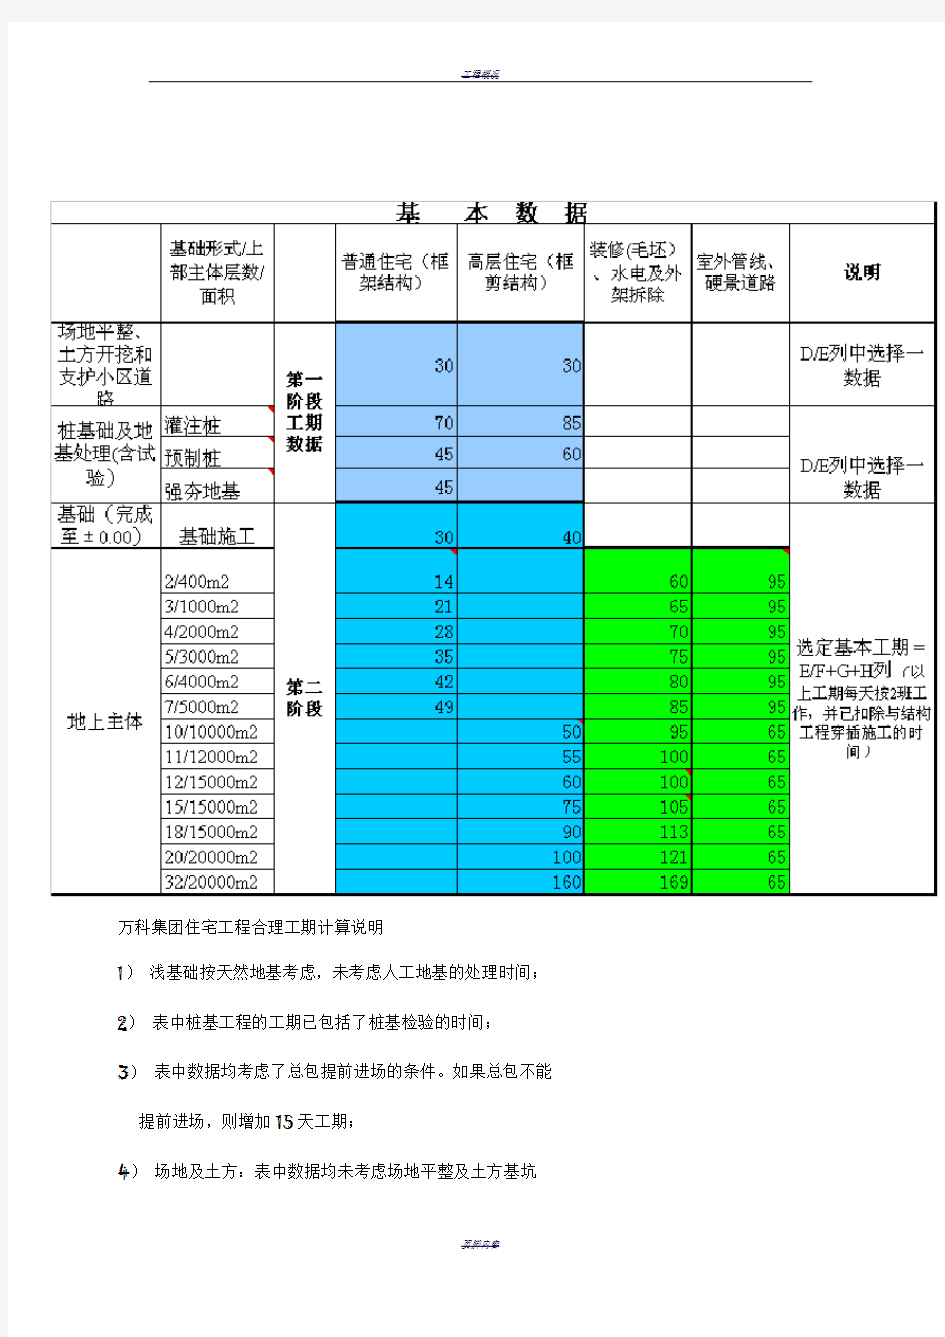 建筑工程(高层)合理工期计算表